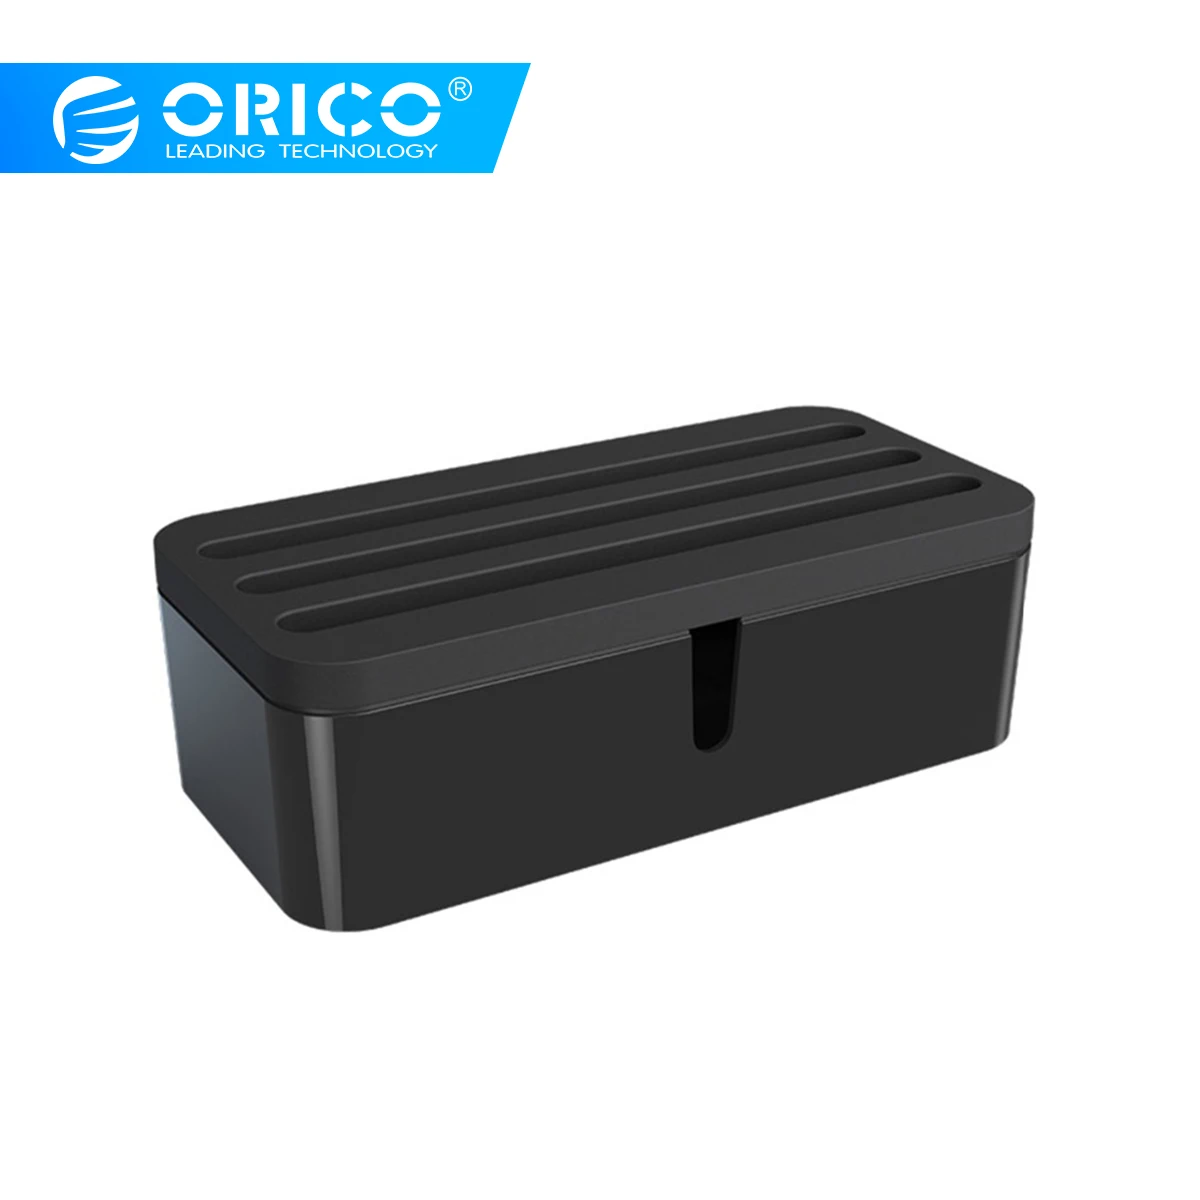 ORICO держатели для телефонов кабель управление электрические розетки коробки USB зарядное устройство протектор Коробка для iphone 7 plus airpods huawei p20 pro